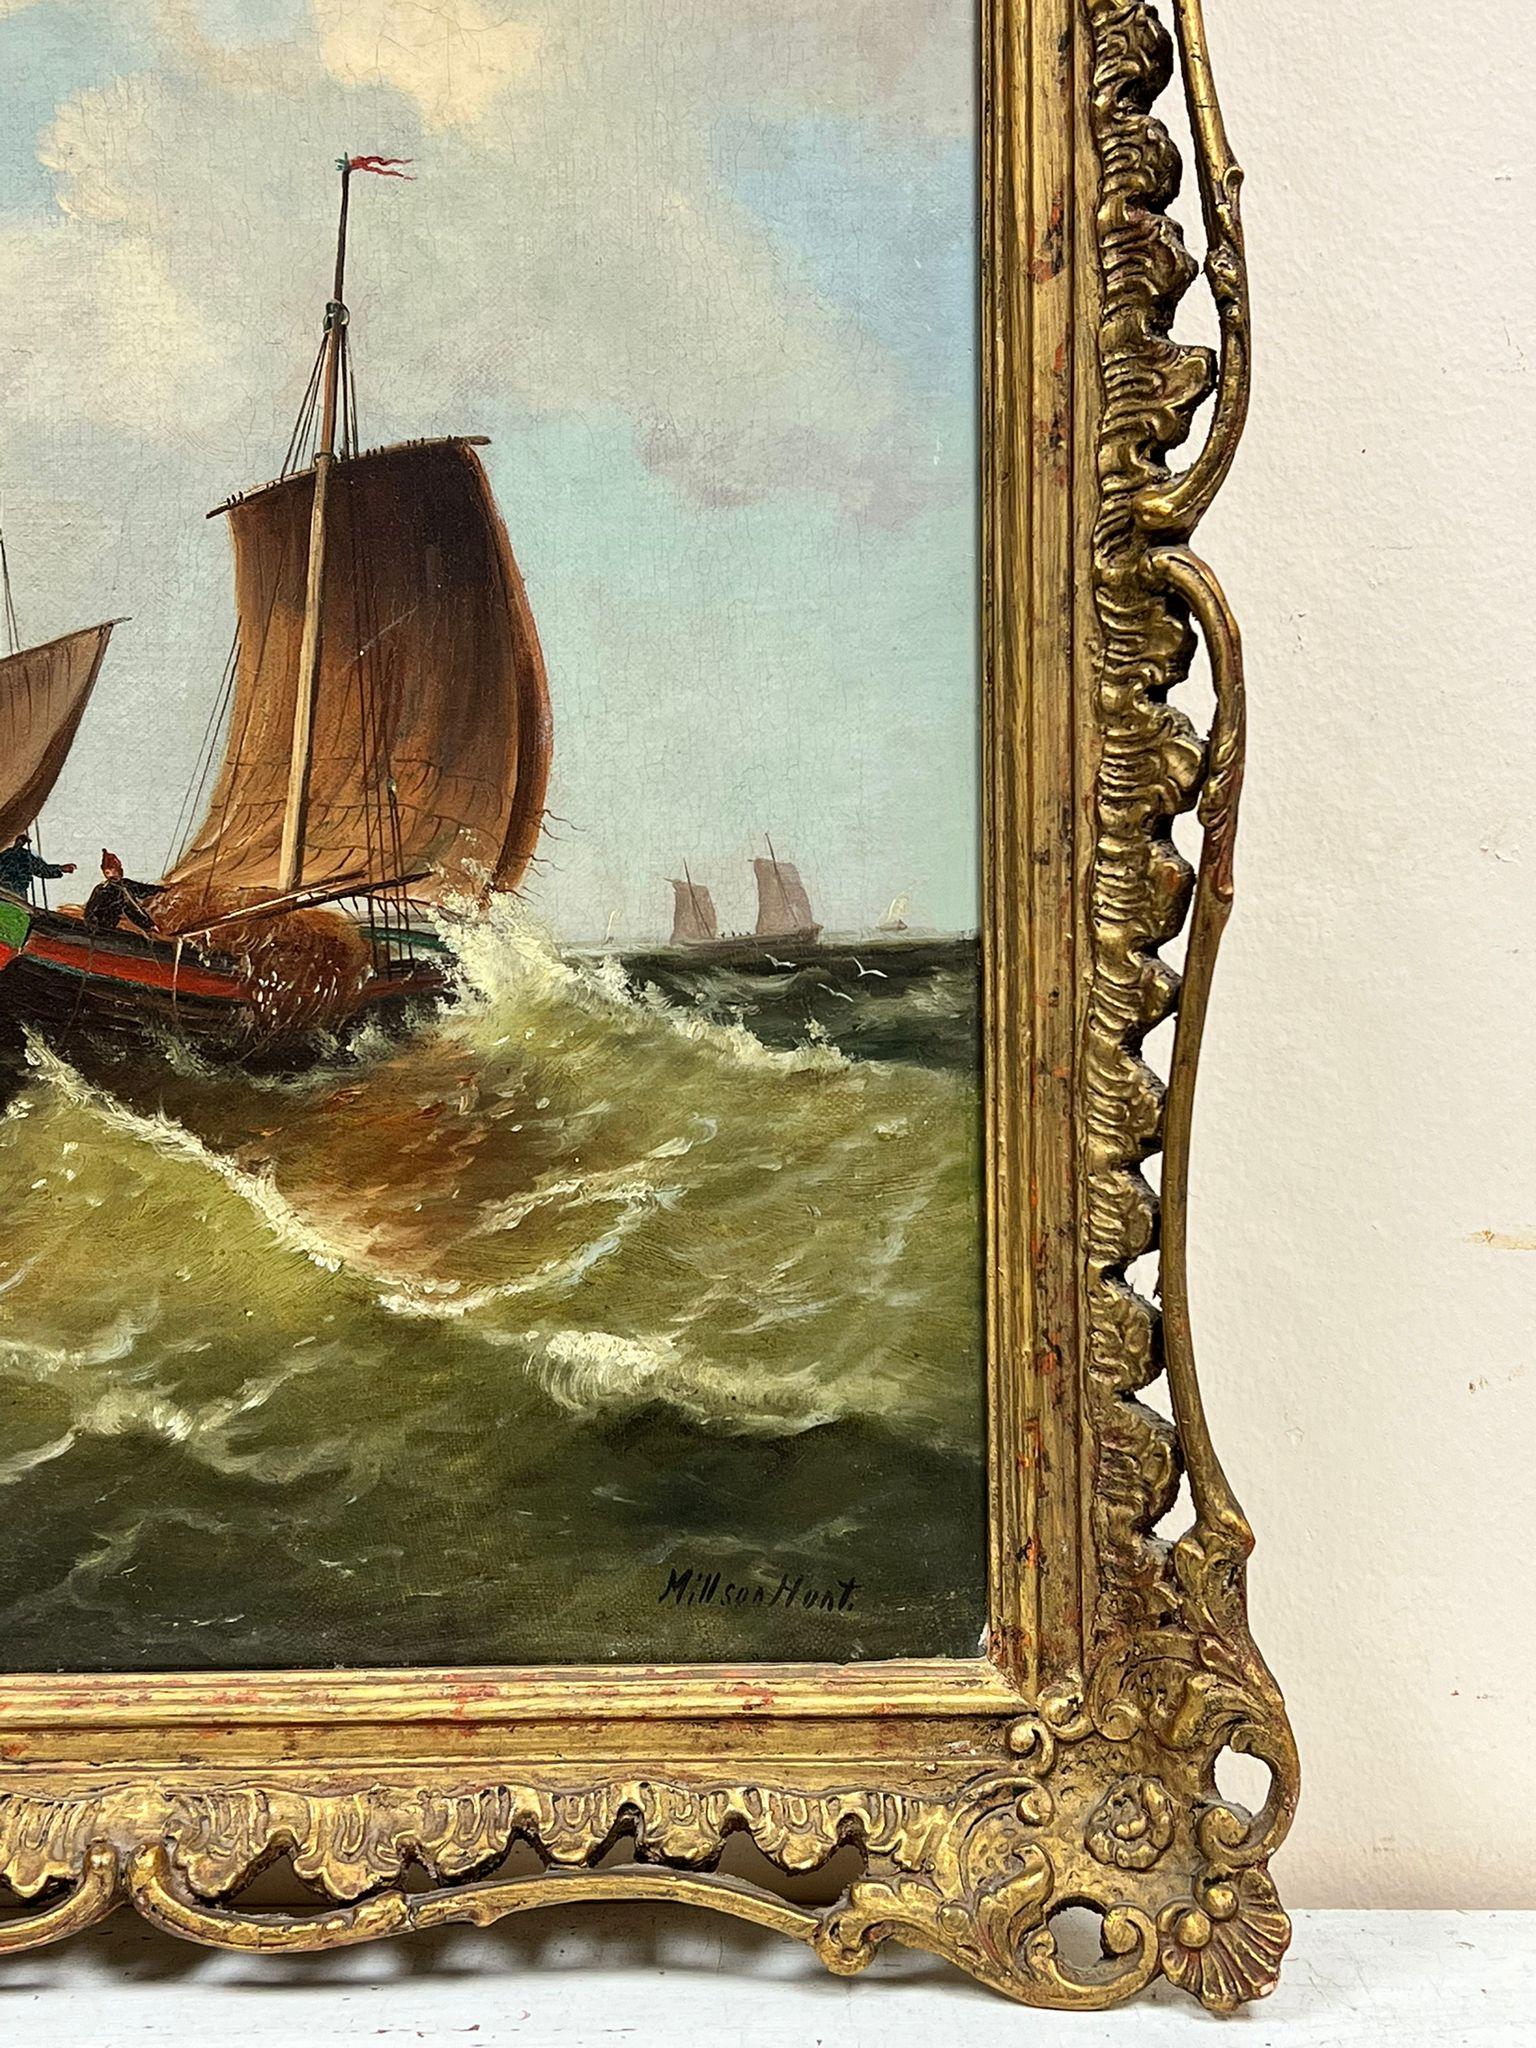 Bateaux de pêche quittant le port
Millson Hunt (fin du 19e siècle) Britannique 
huile sur toile signée, encadrée
toile : 18 x 13.5 pouces
encadré : 22 x 18 pouces
le tableau est en très bon état général et sain, veuillez noter que le cadre est très